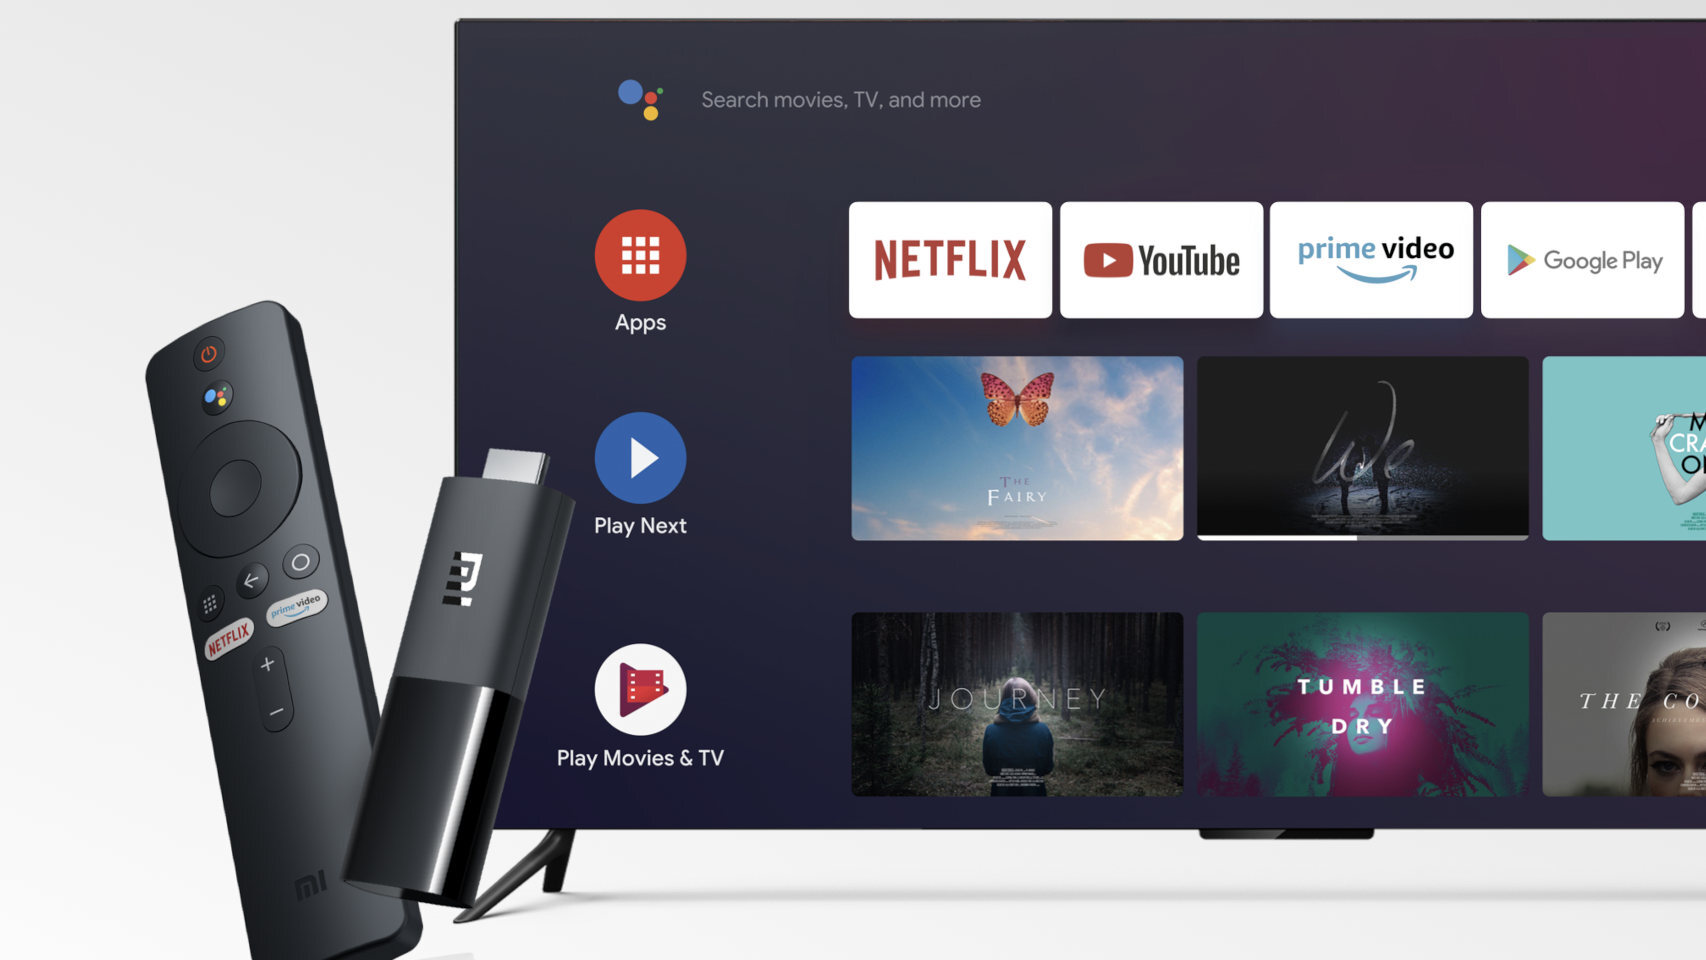 Reproductor multimedia Apple TV 4K VS Xiaomi TV Stick 4K: características,  diferencias y precios